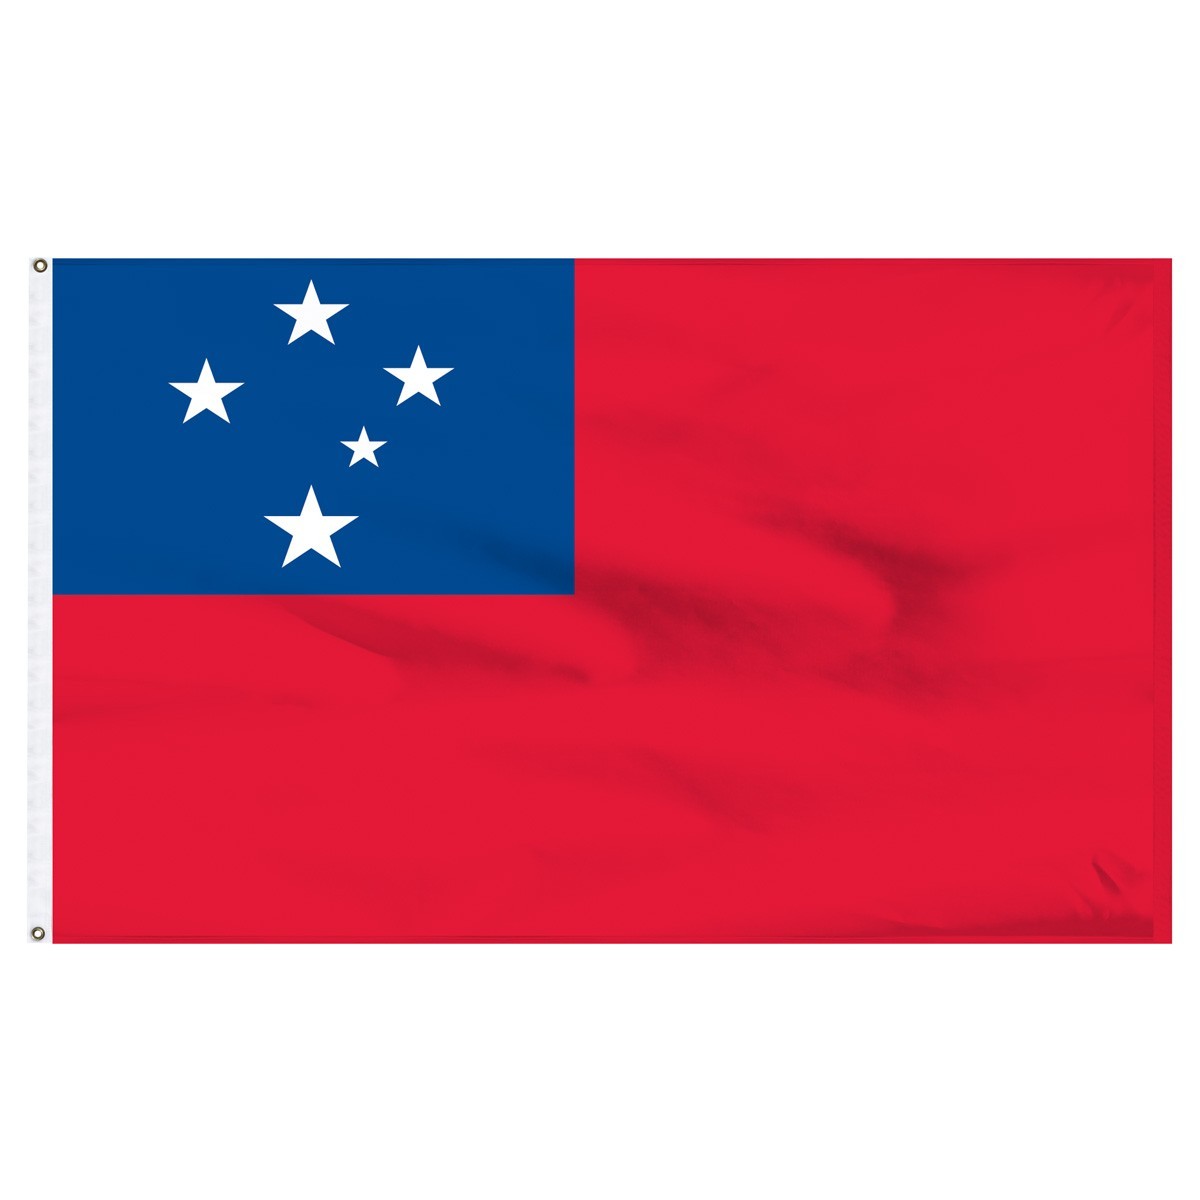 Bandera de nailon para exteriores de Samoa Occidental, 2 pies x 3 pies